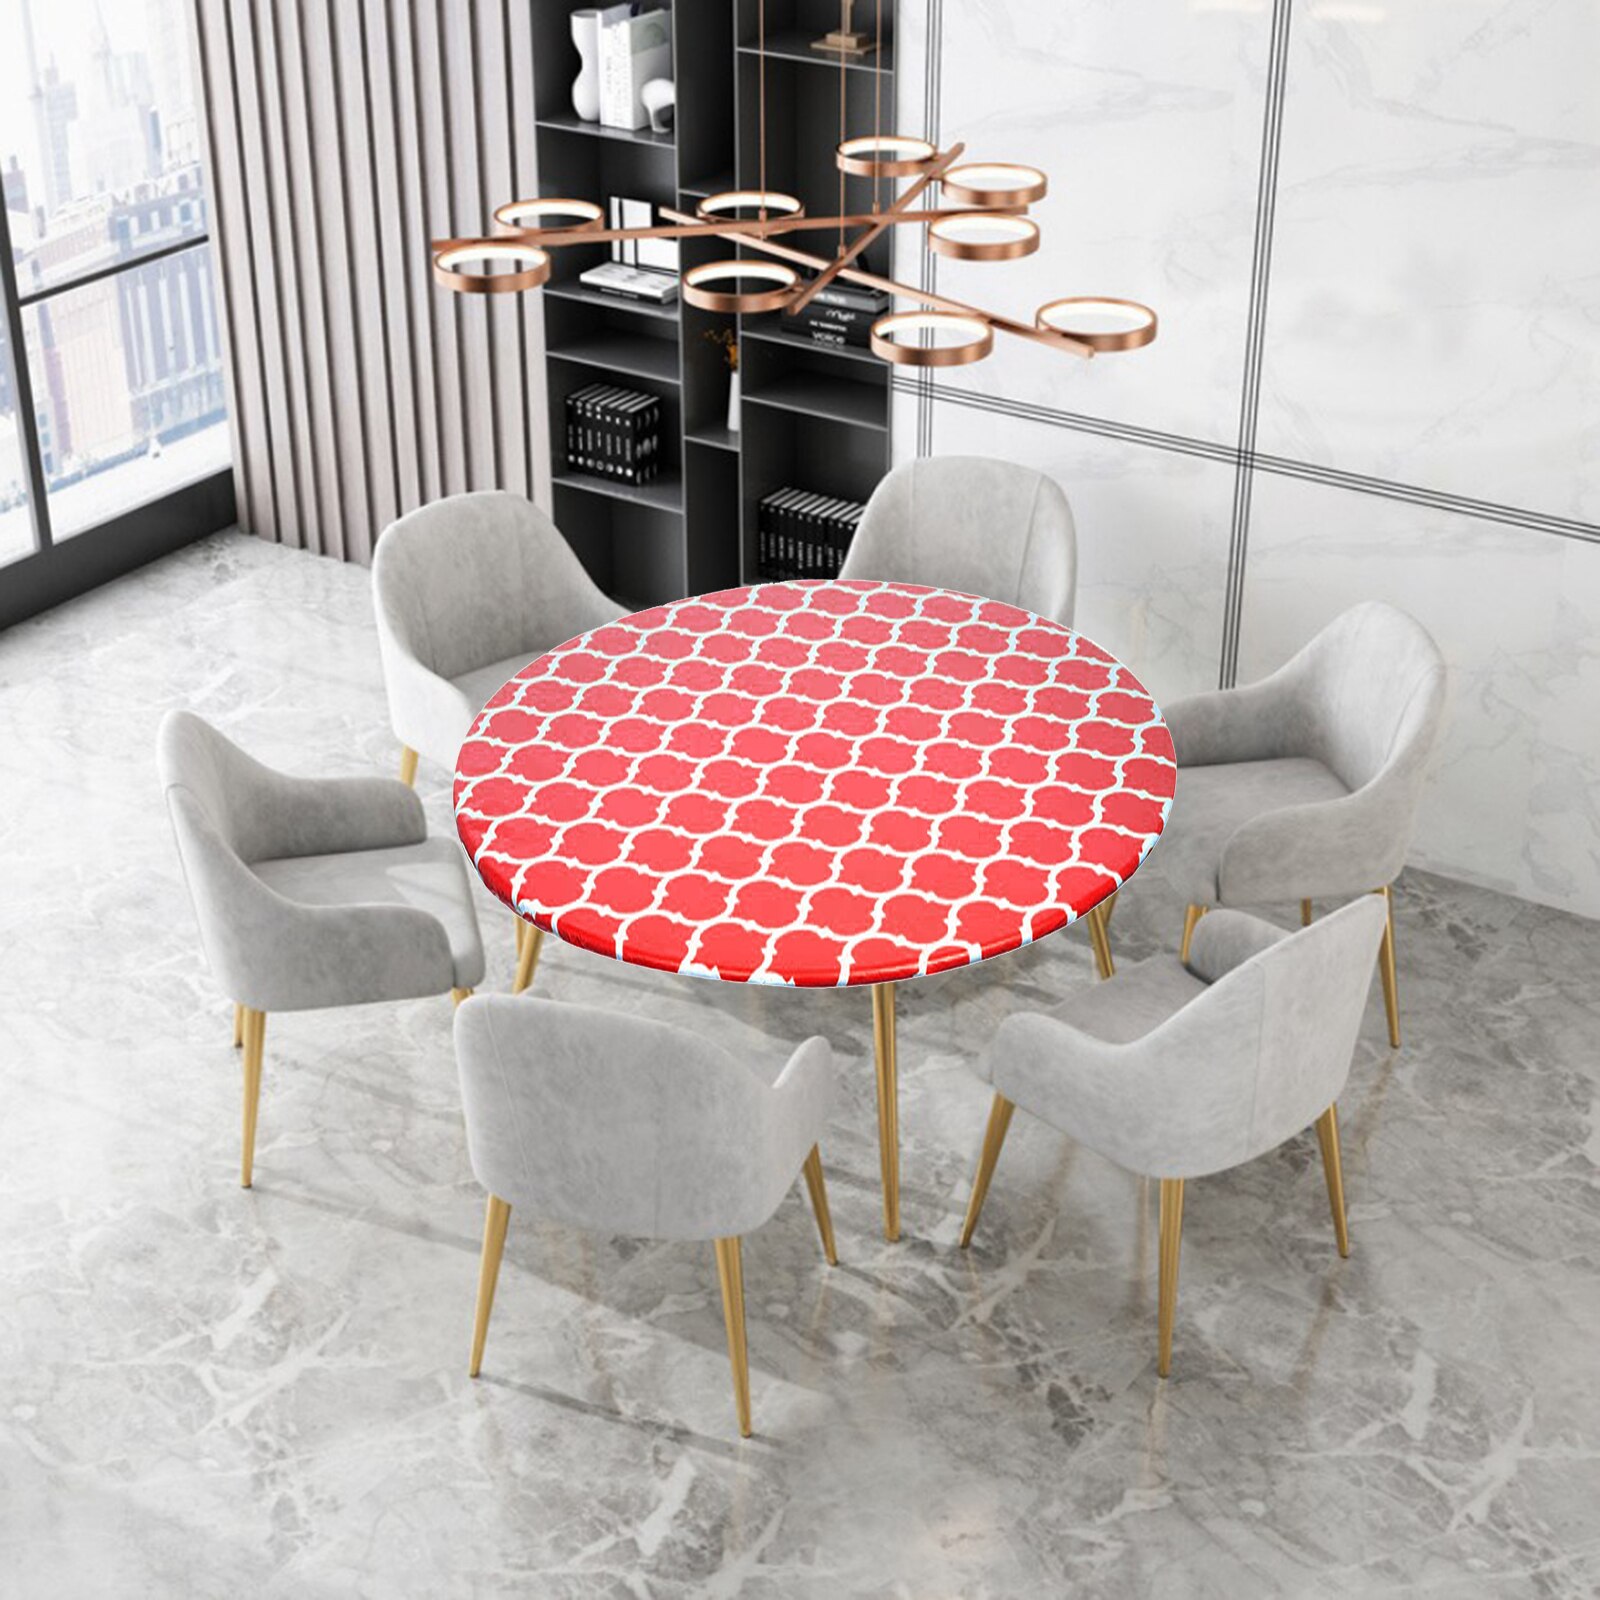 Monteret vinyldug flannel bagbeklædning borddæksel til spisefester: Rød s